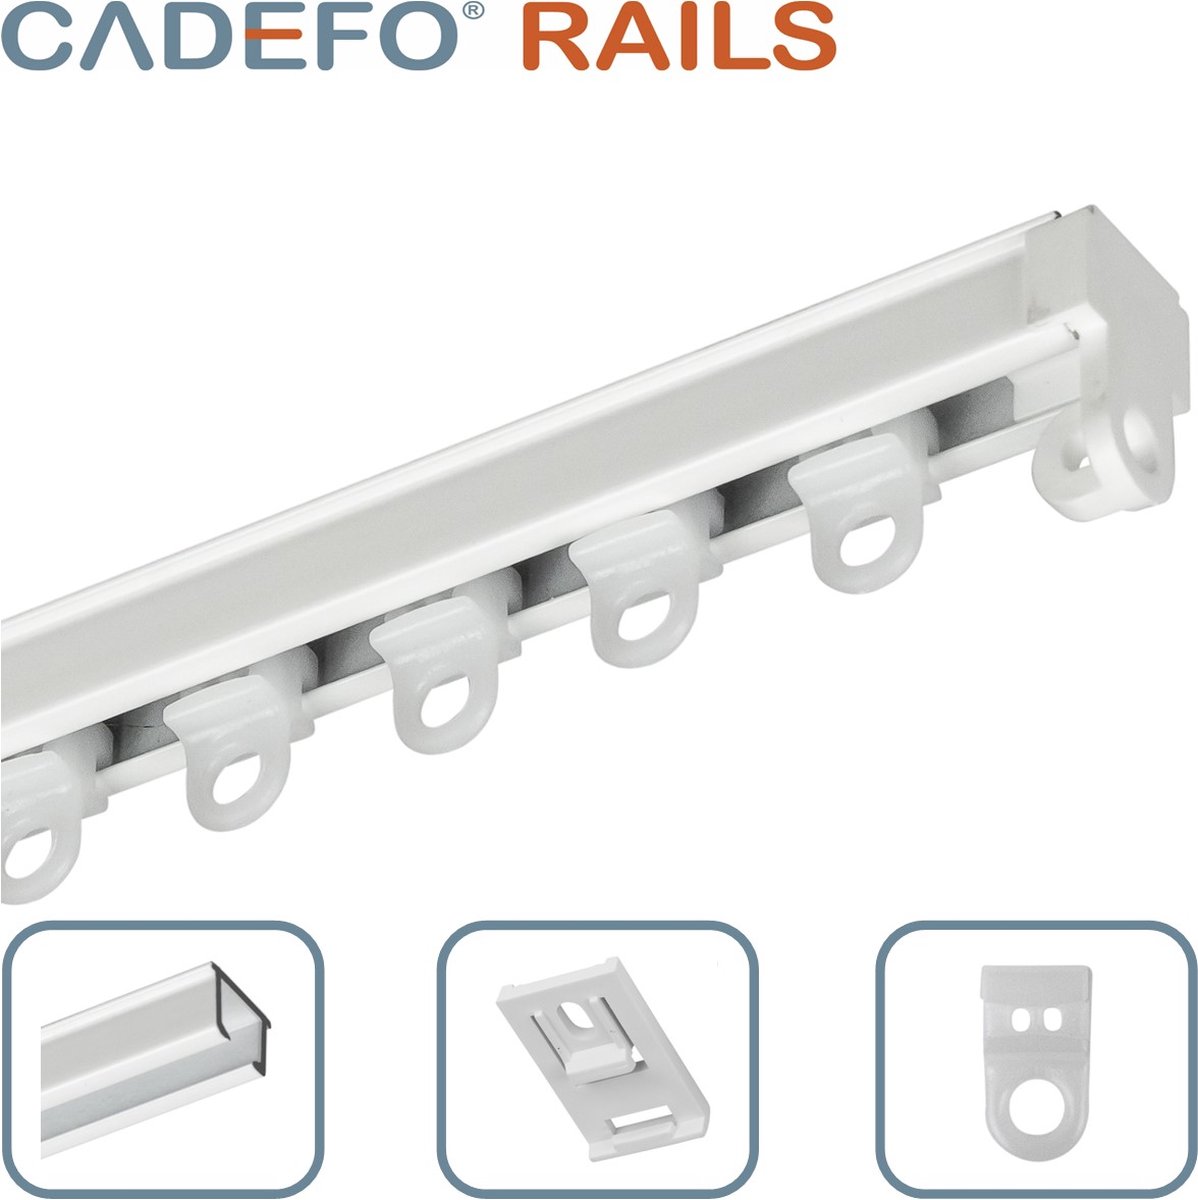 CADEFO RAILS (301 - 350 cm) Gordijnrails - Compleet op maat! - UIT 1 STUK - Leverbaar tot 6 meter - Plafondbevestiging - Lengte 310 cm